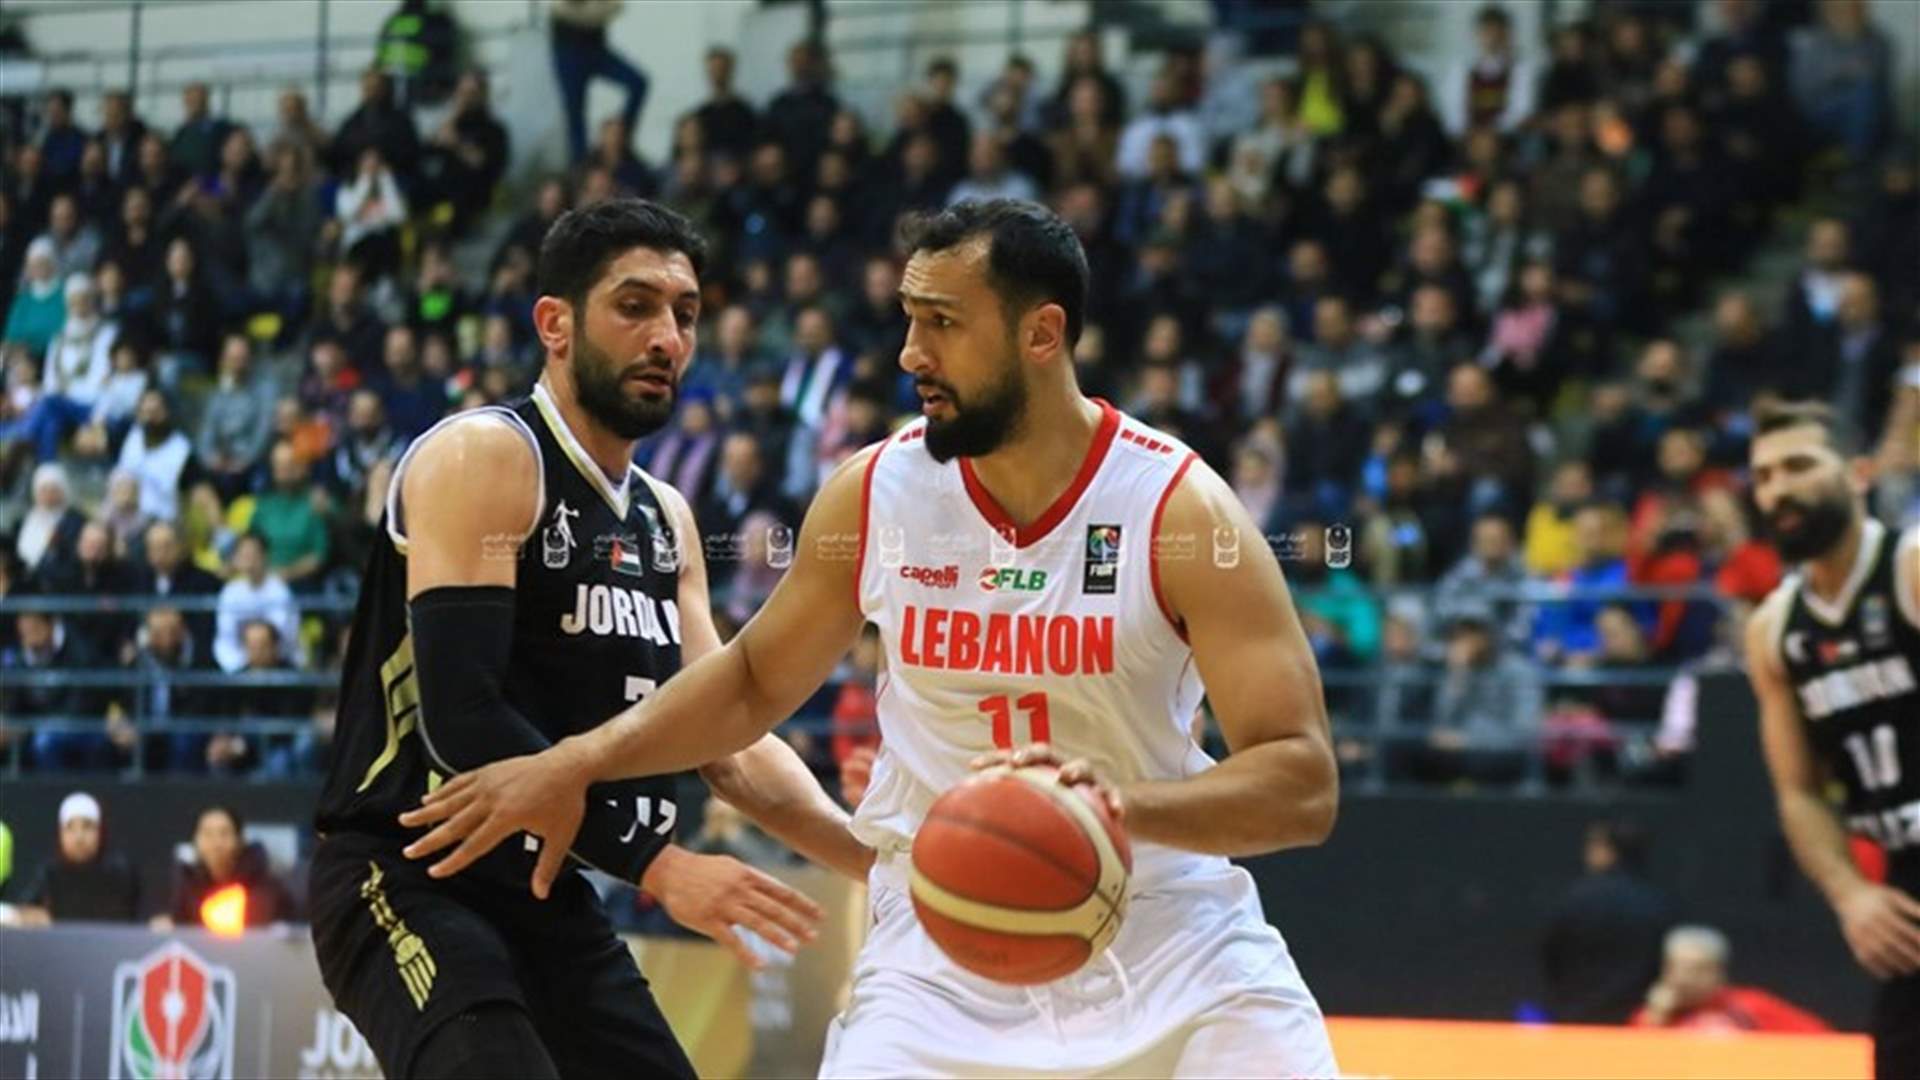 تعرفوا إلى تشكيلة المنتخب اللبناني في تصفيات كأس اسيا 2021 بكرة السلة